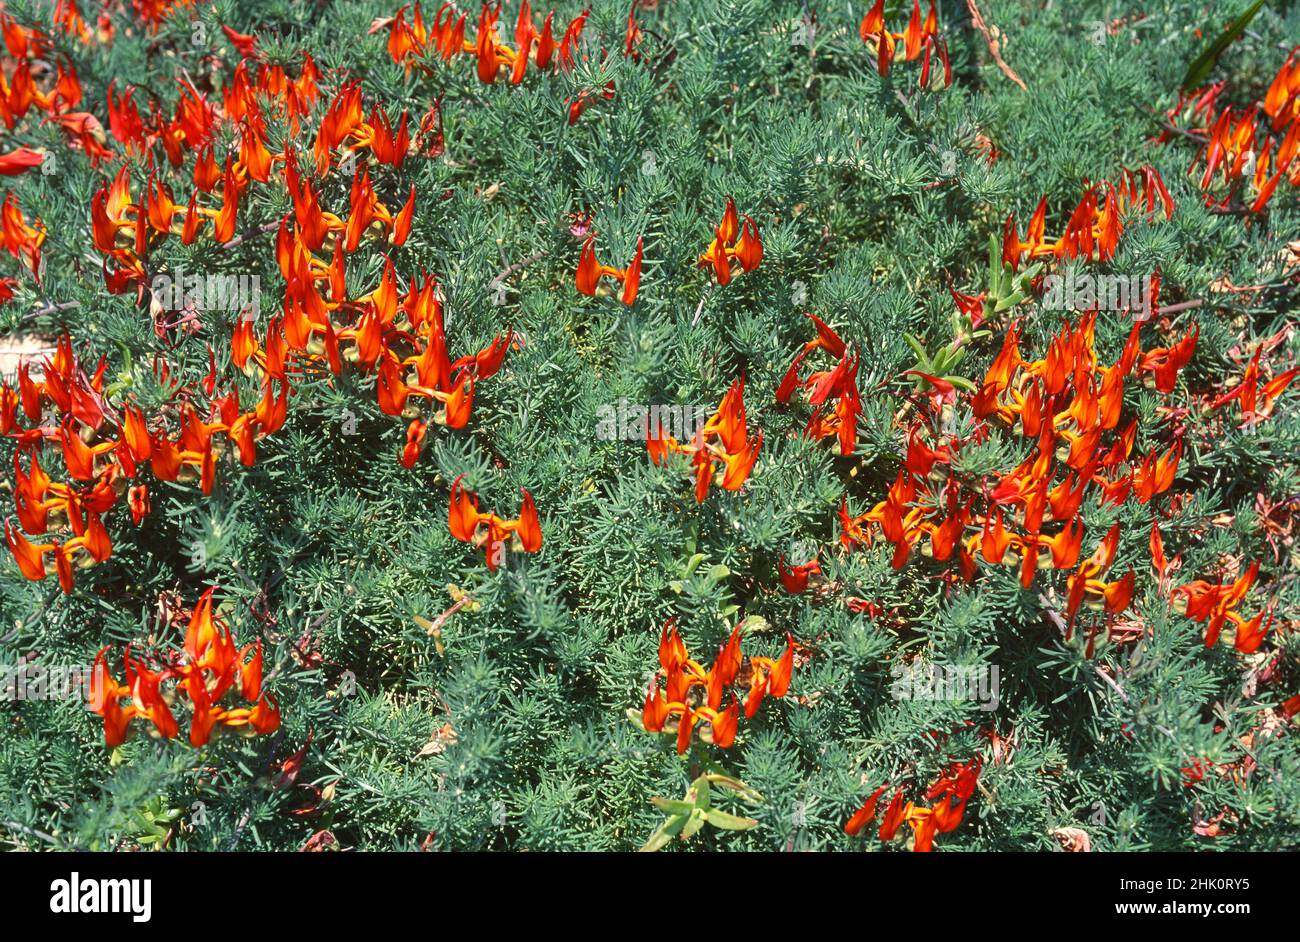 Picopaloma, der Papageienschnabel oder Korallenstein (Lotus berthelotii) ist ein ausdauerndes, auf Teneriffa, den Kanarischen Inseln, Spanien, endemisches Kraut. Orangefarbene Blüten Stockfoto